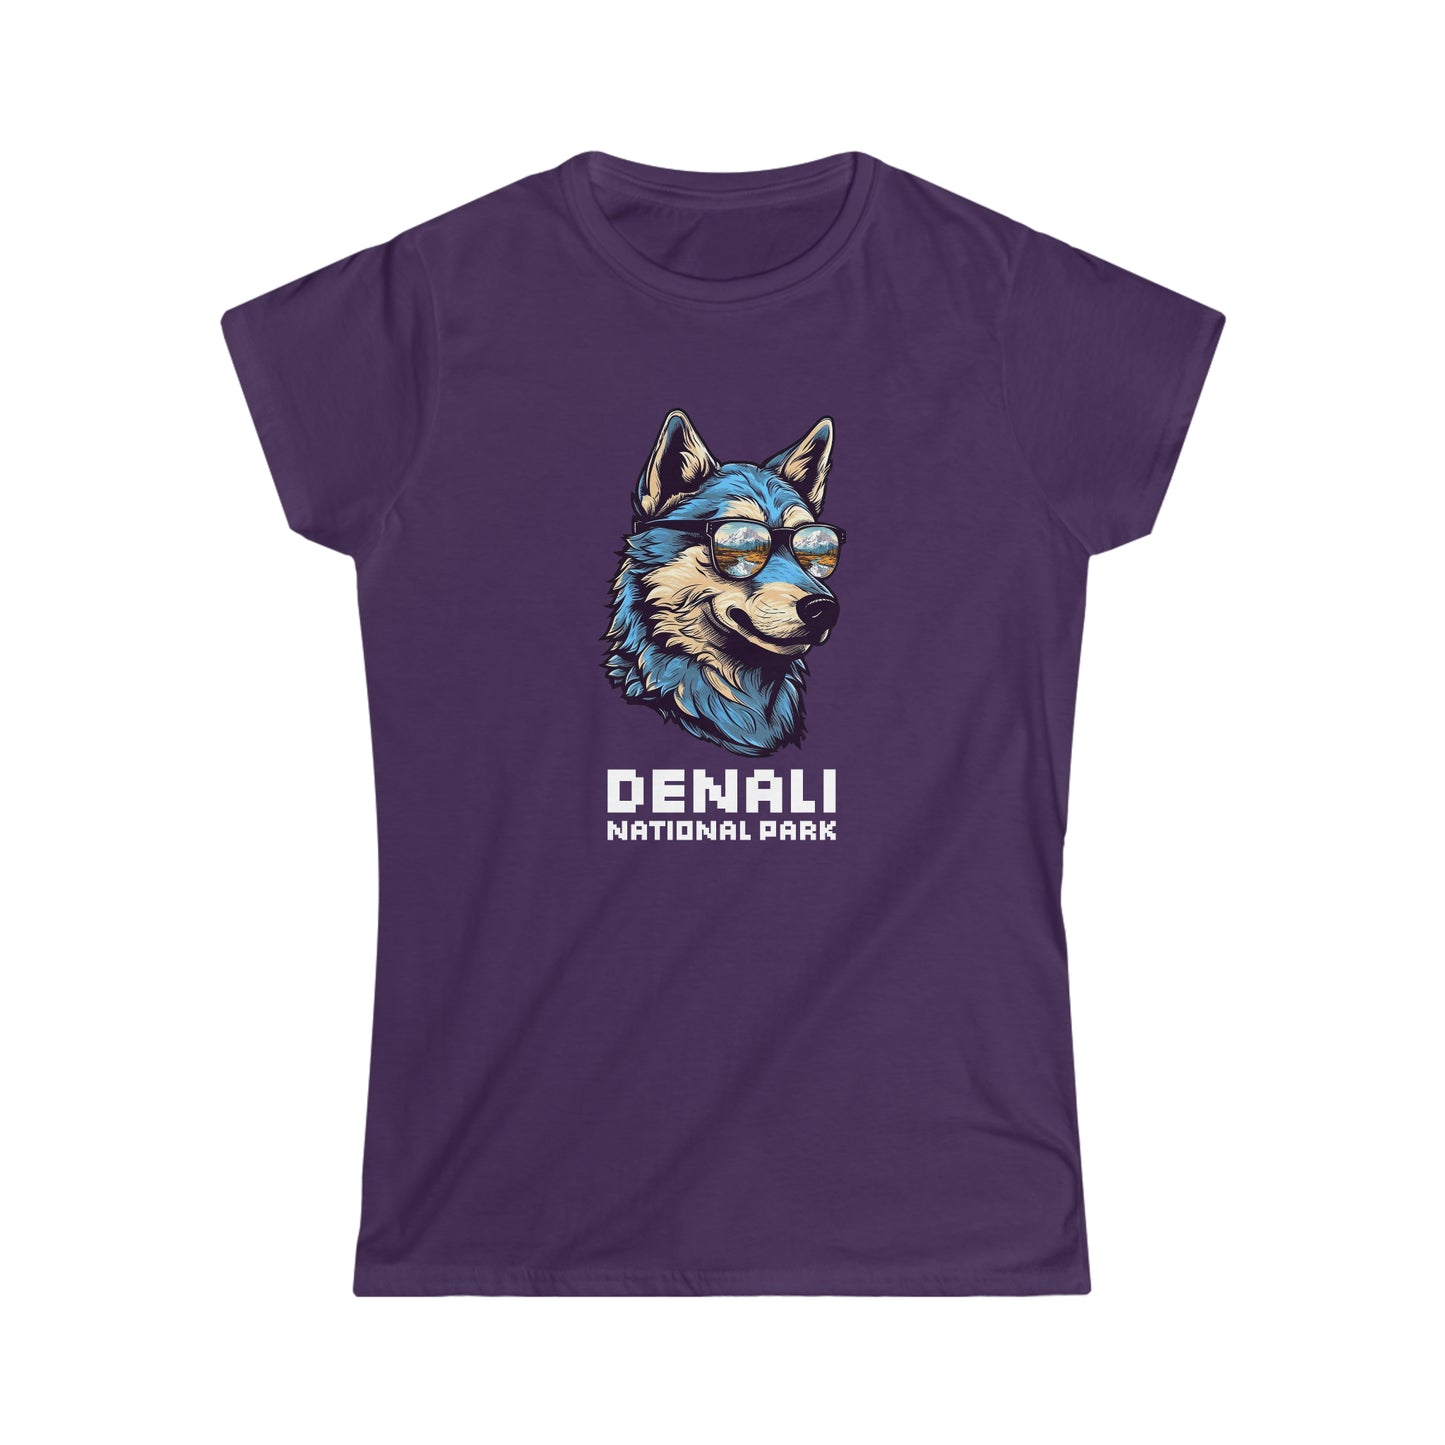 Denali National Park Women's T-Shirt - Cool Wolf